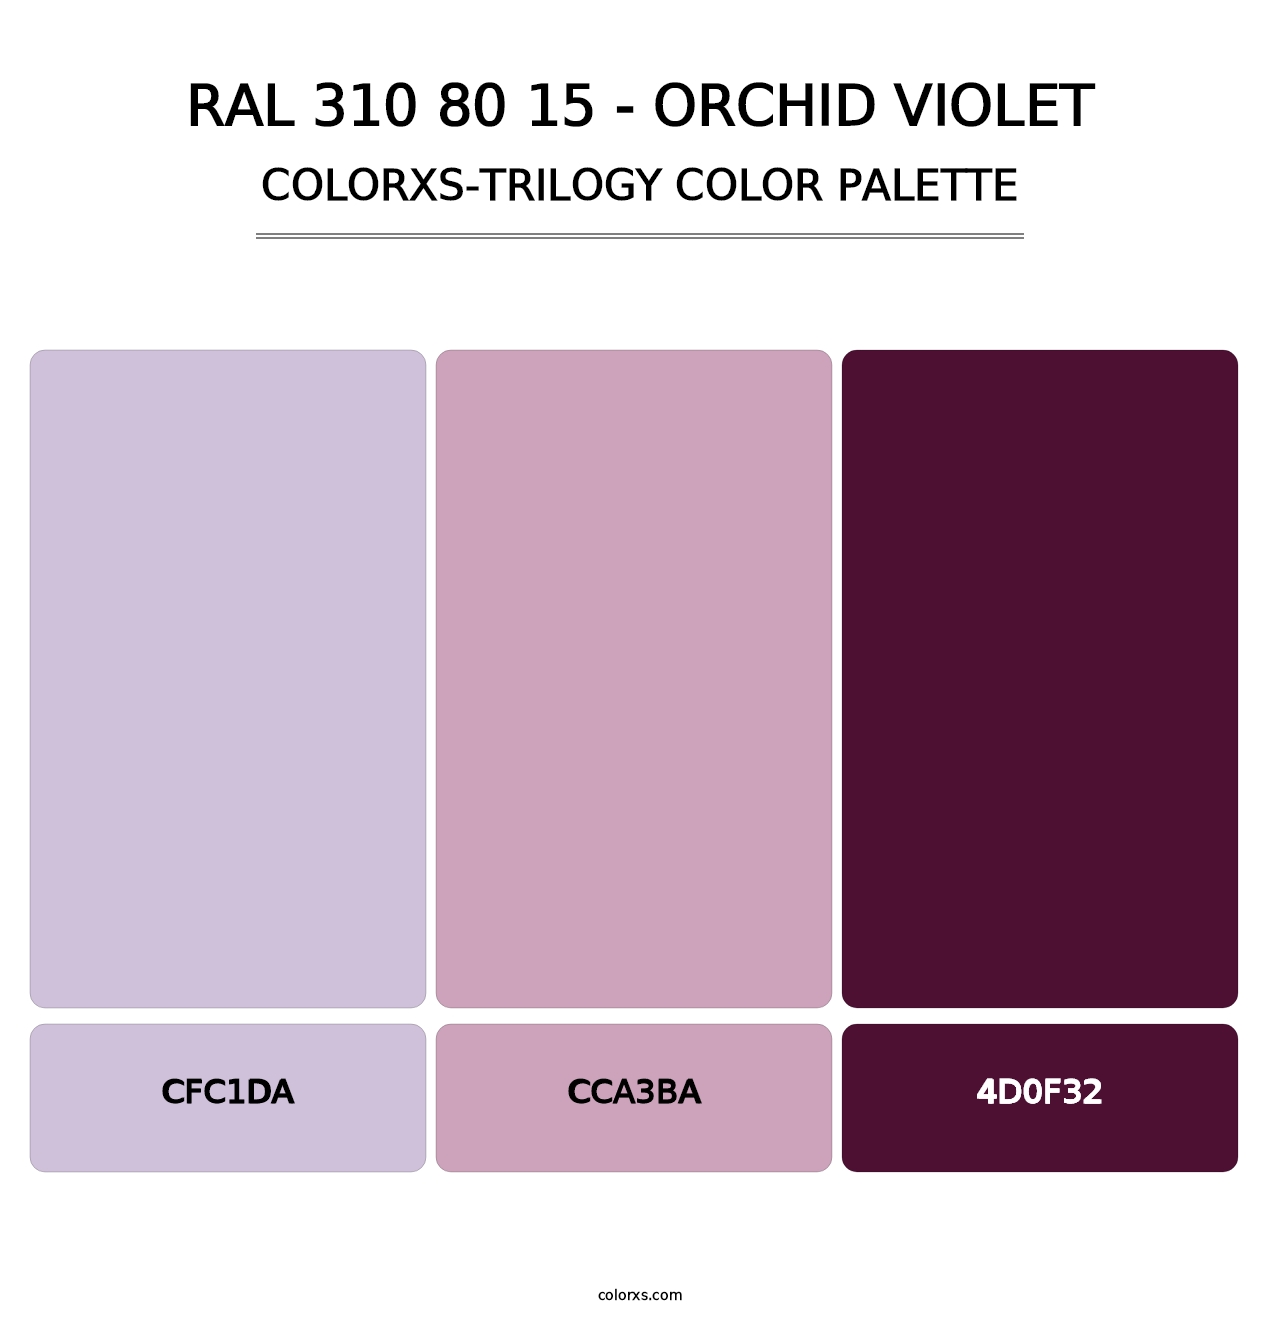 RAL 310 80 15 - Orchid Violet - Colorxs Trilogy Palette